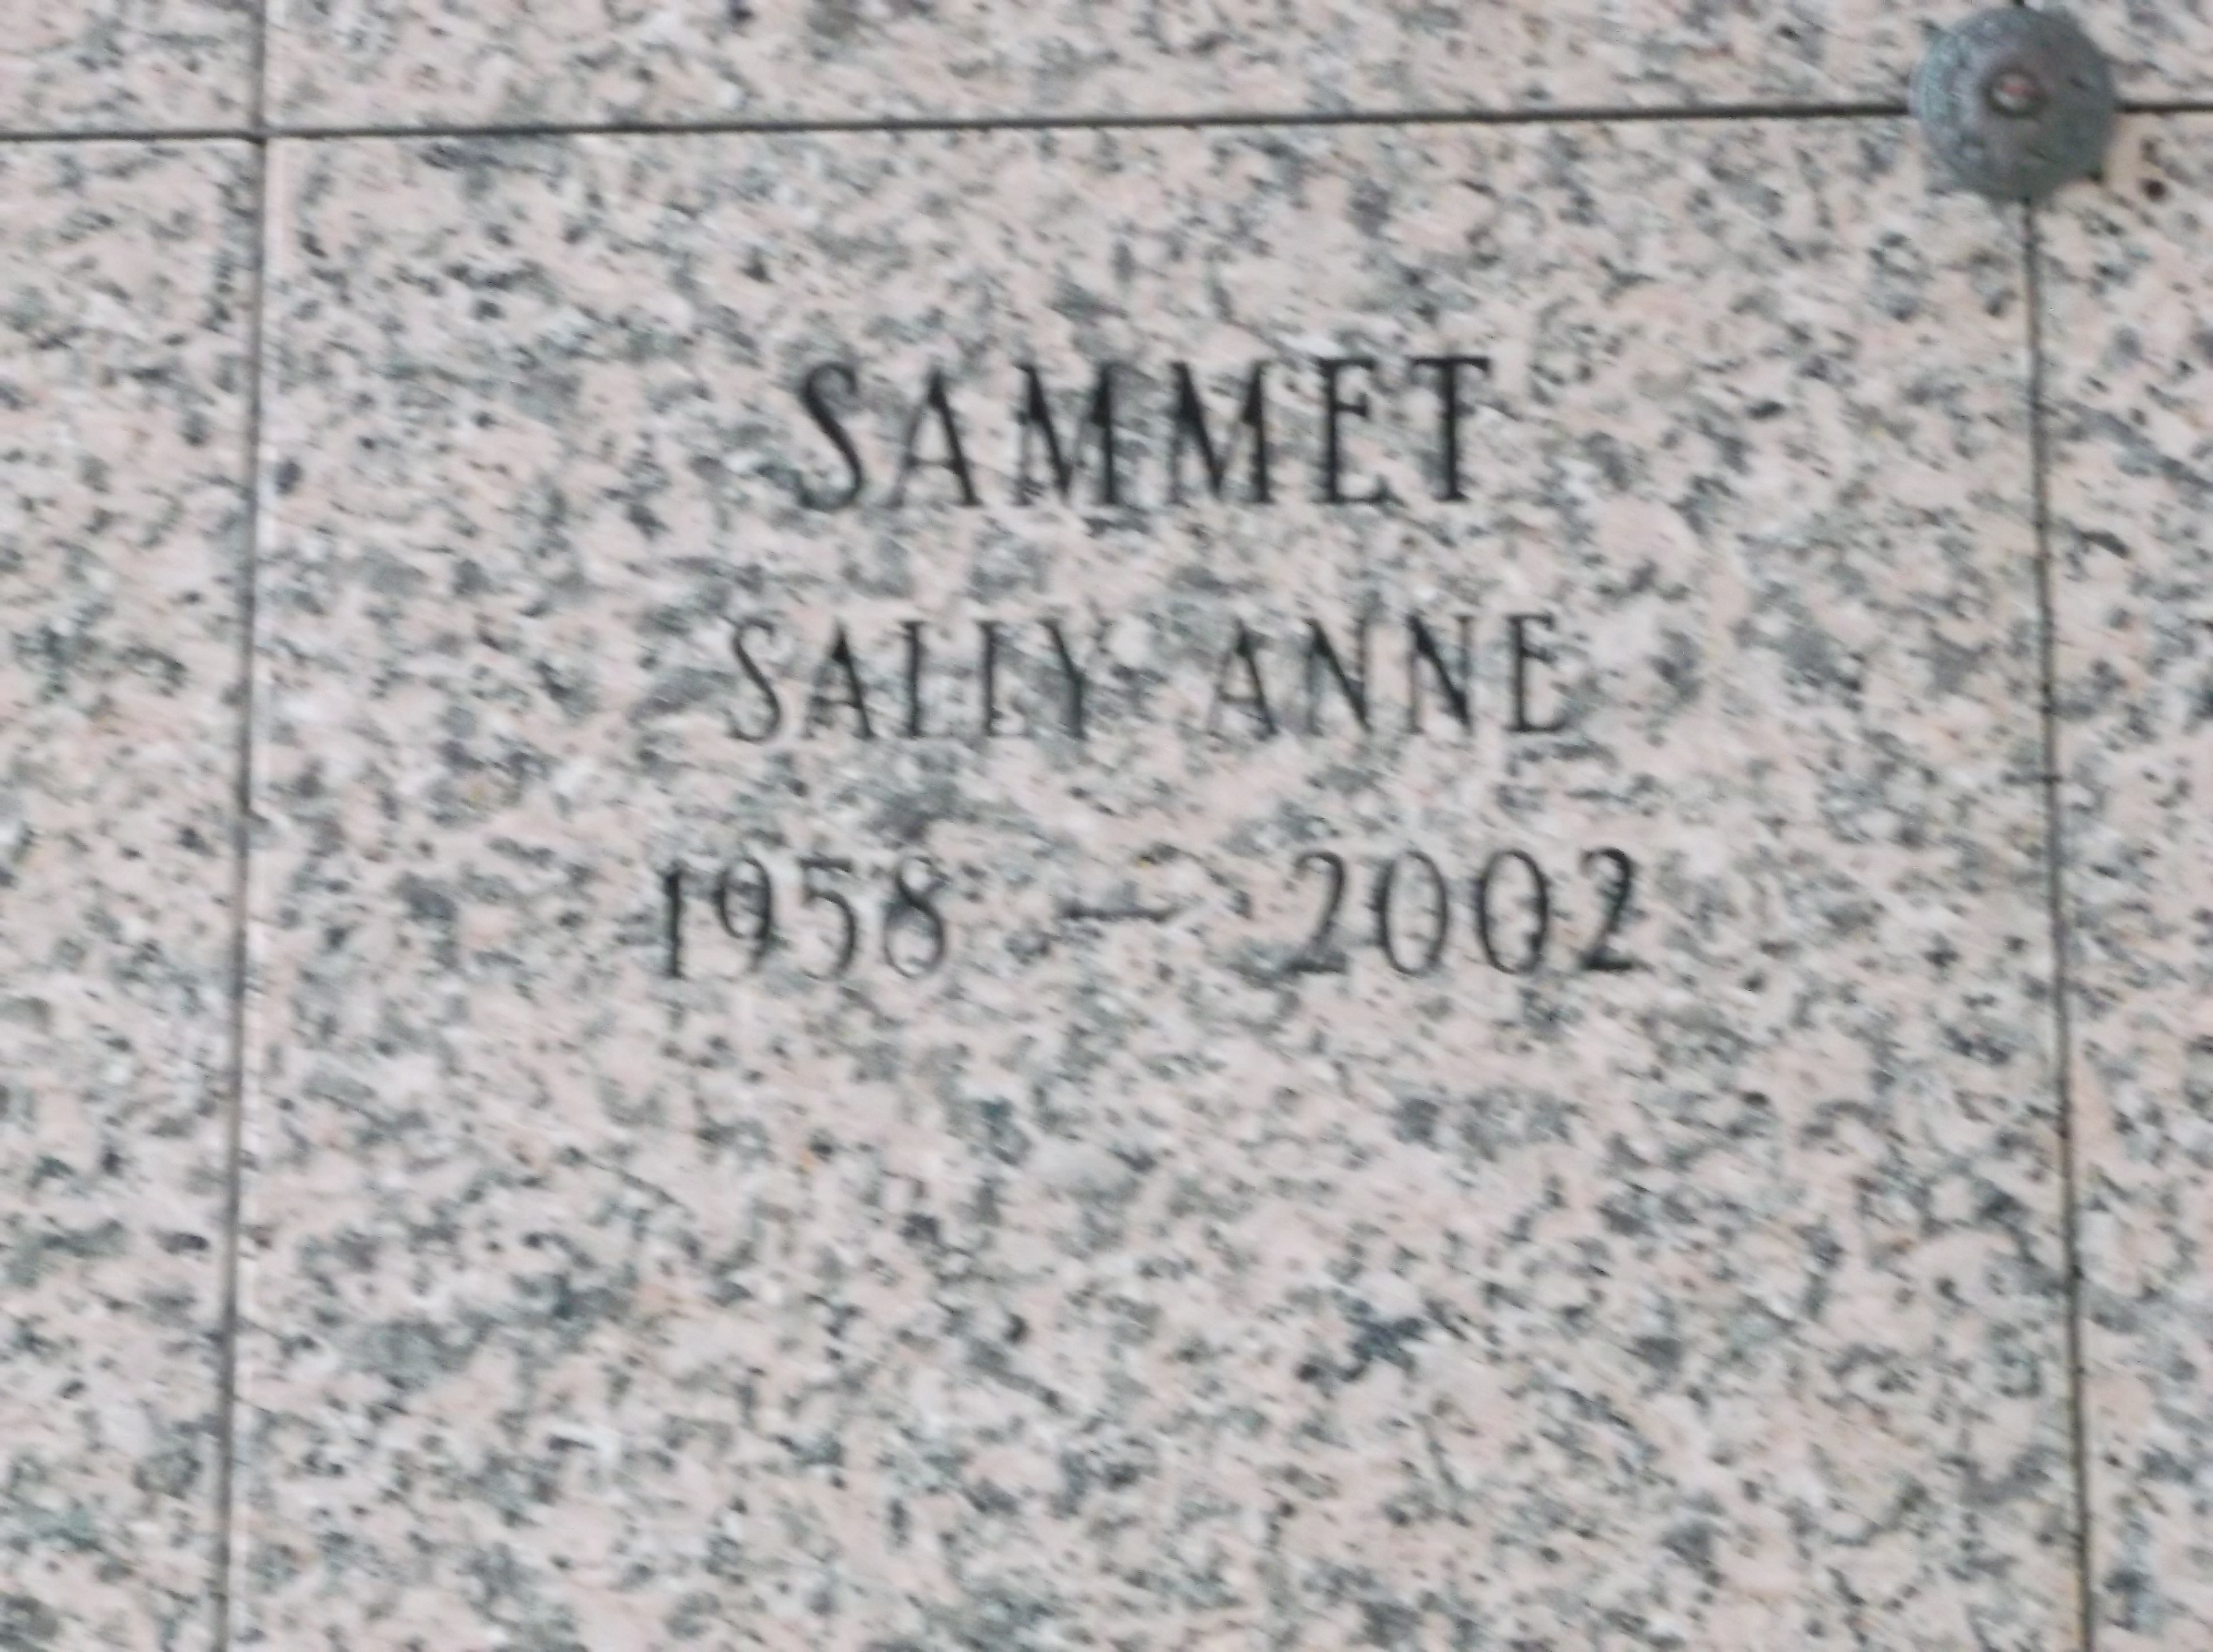 Sally Anne Sammet